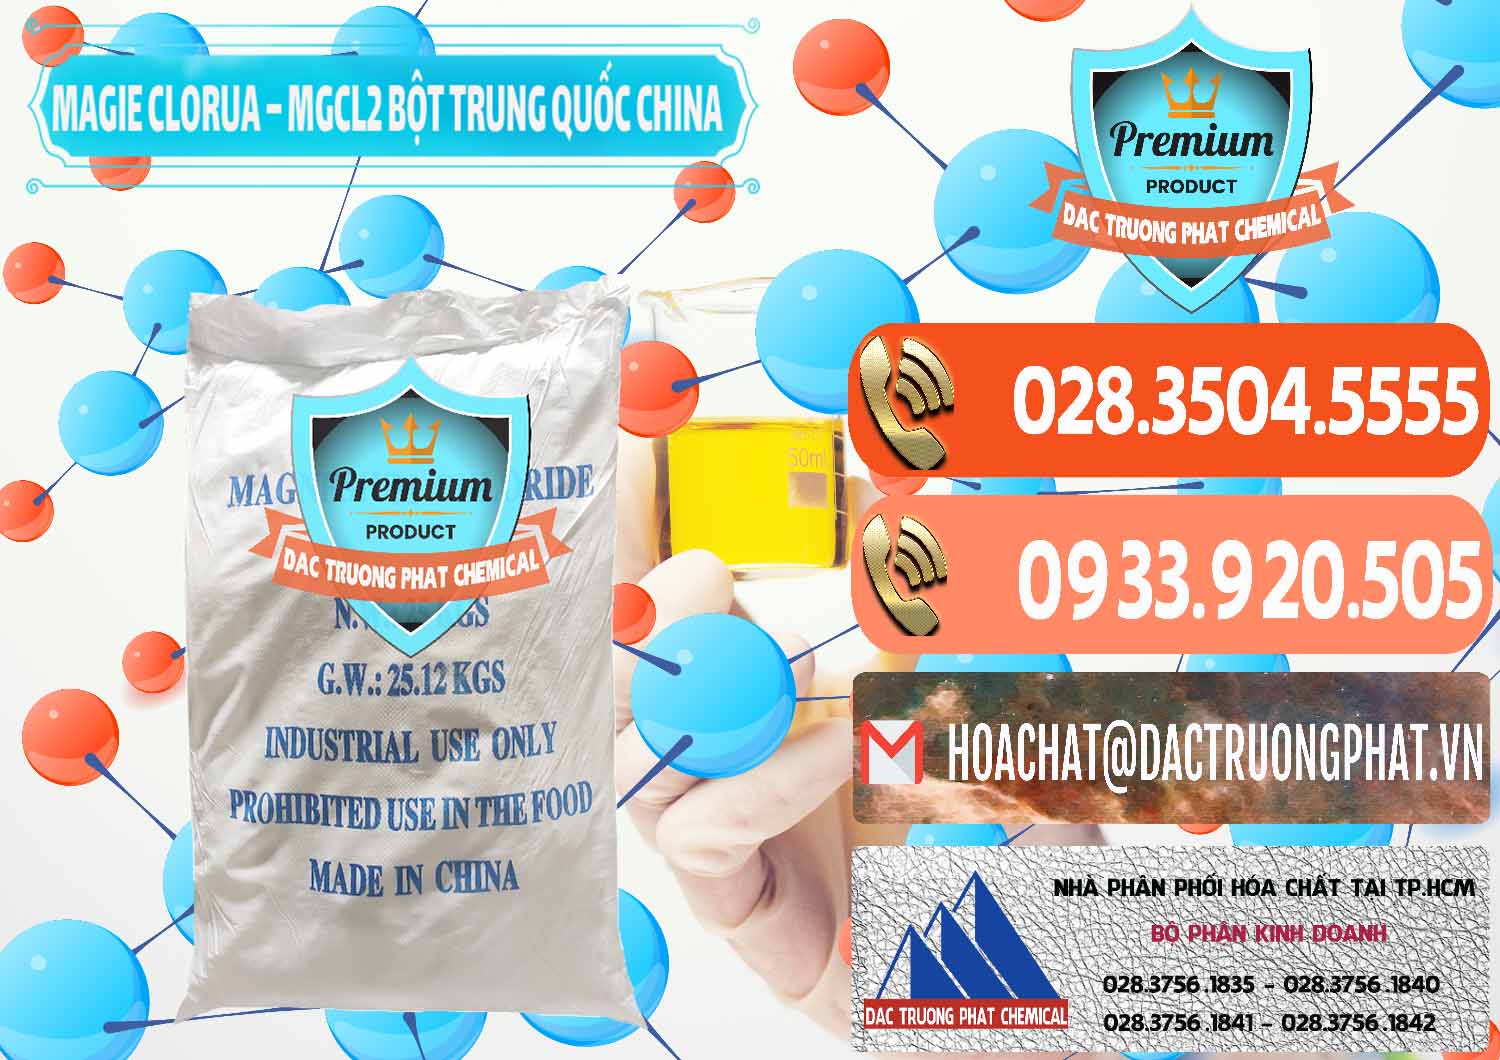 Nơi bán ( phân phối ) Magie Clorua – MGCL2 96% Dạng Bột Bao Chữ Xanh Trung Quốc China - 0207 - Công ty chuyên bán _ phân phối hóa chất tại TP.HCM - hoachatmientay.com